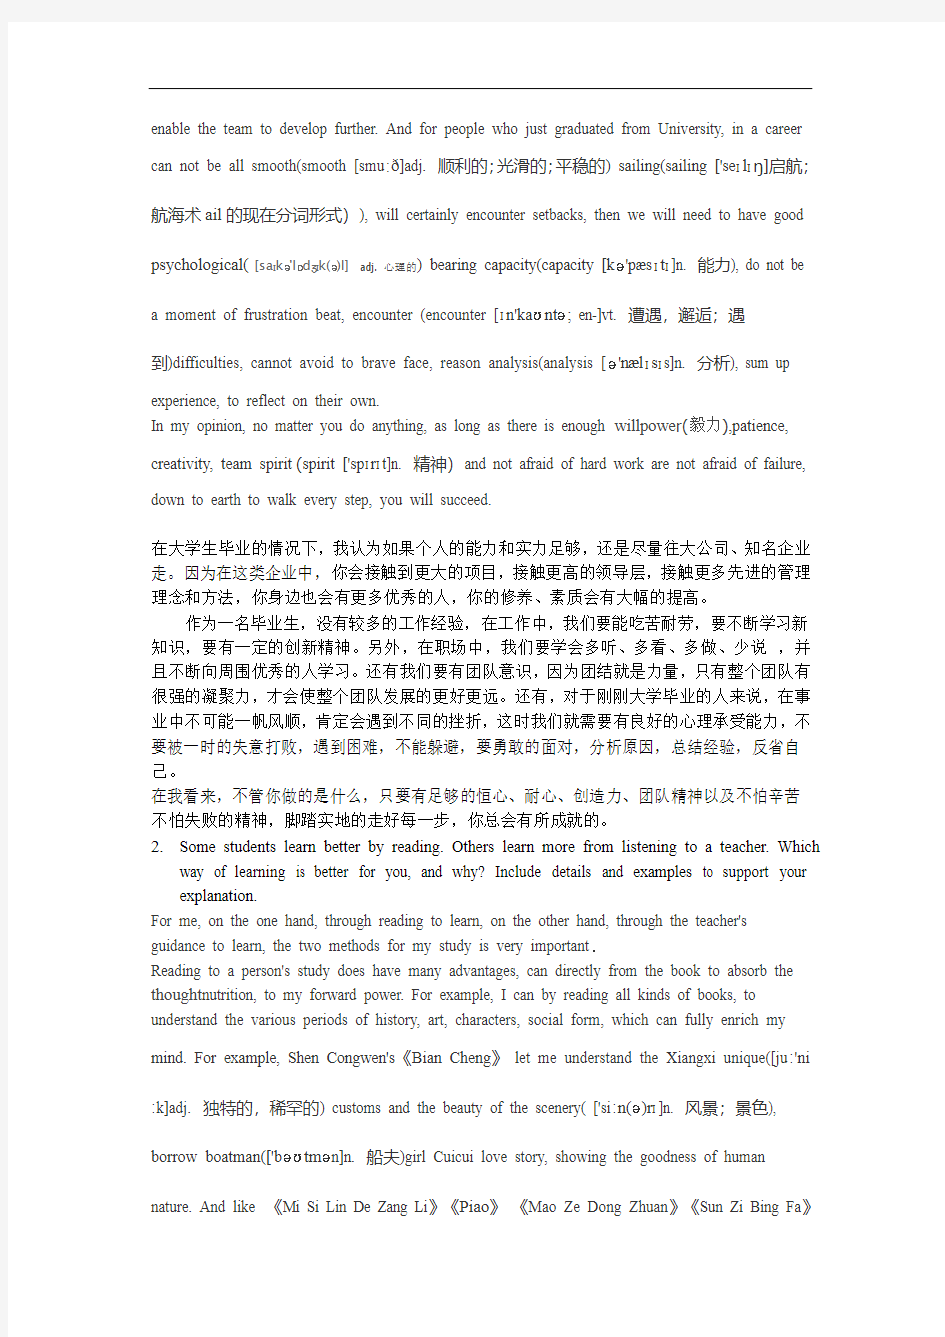 上海海事大学英语口语考试题目及答案